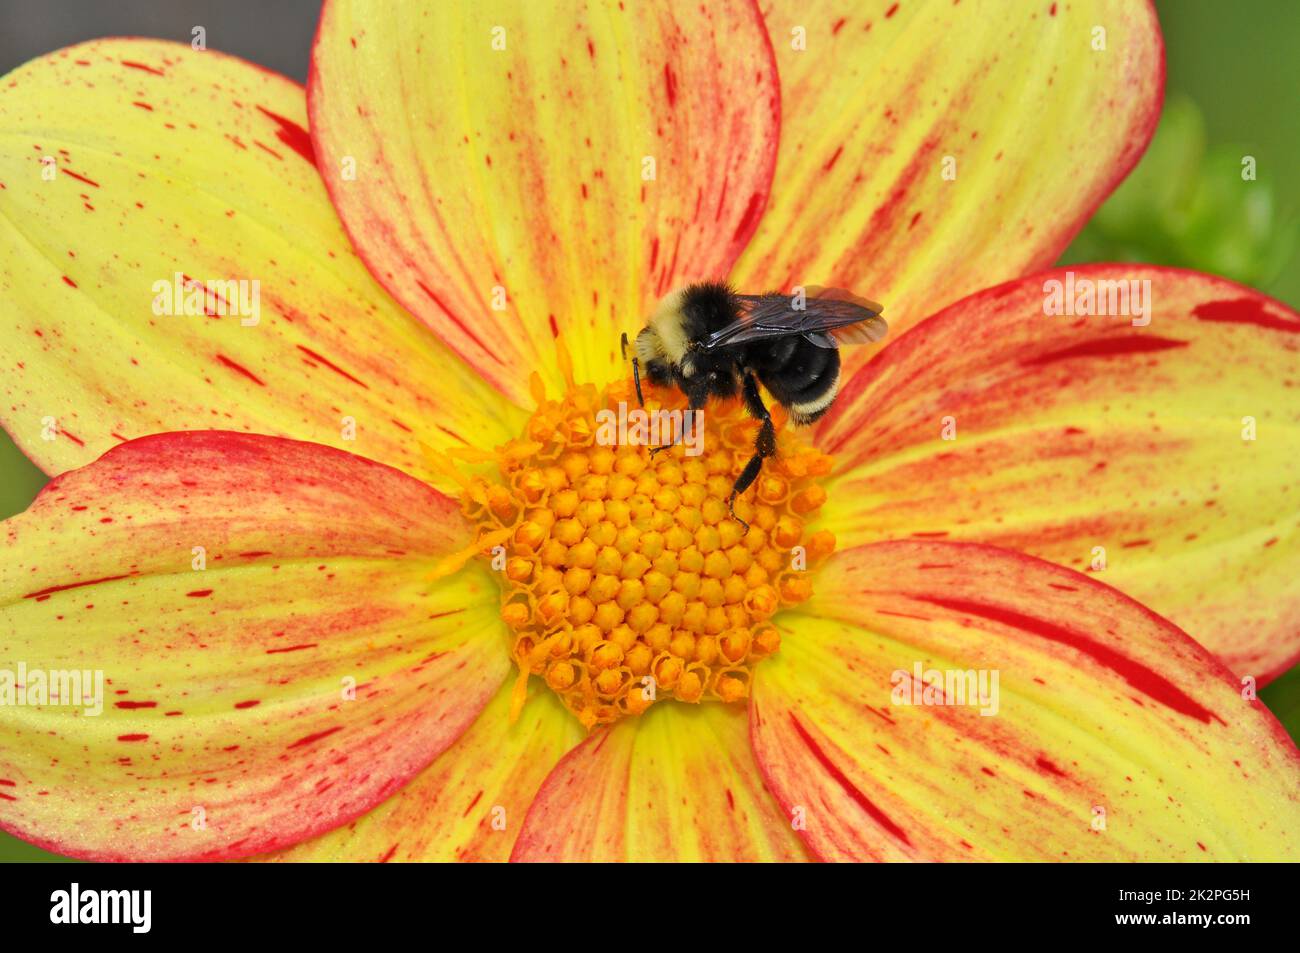 Queen bee on flower Stock Photo